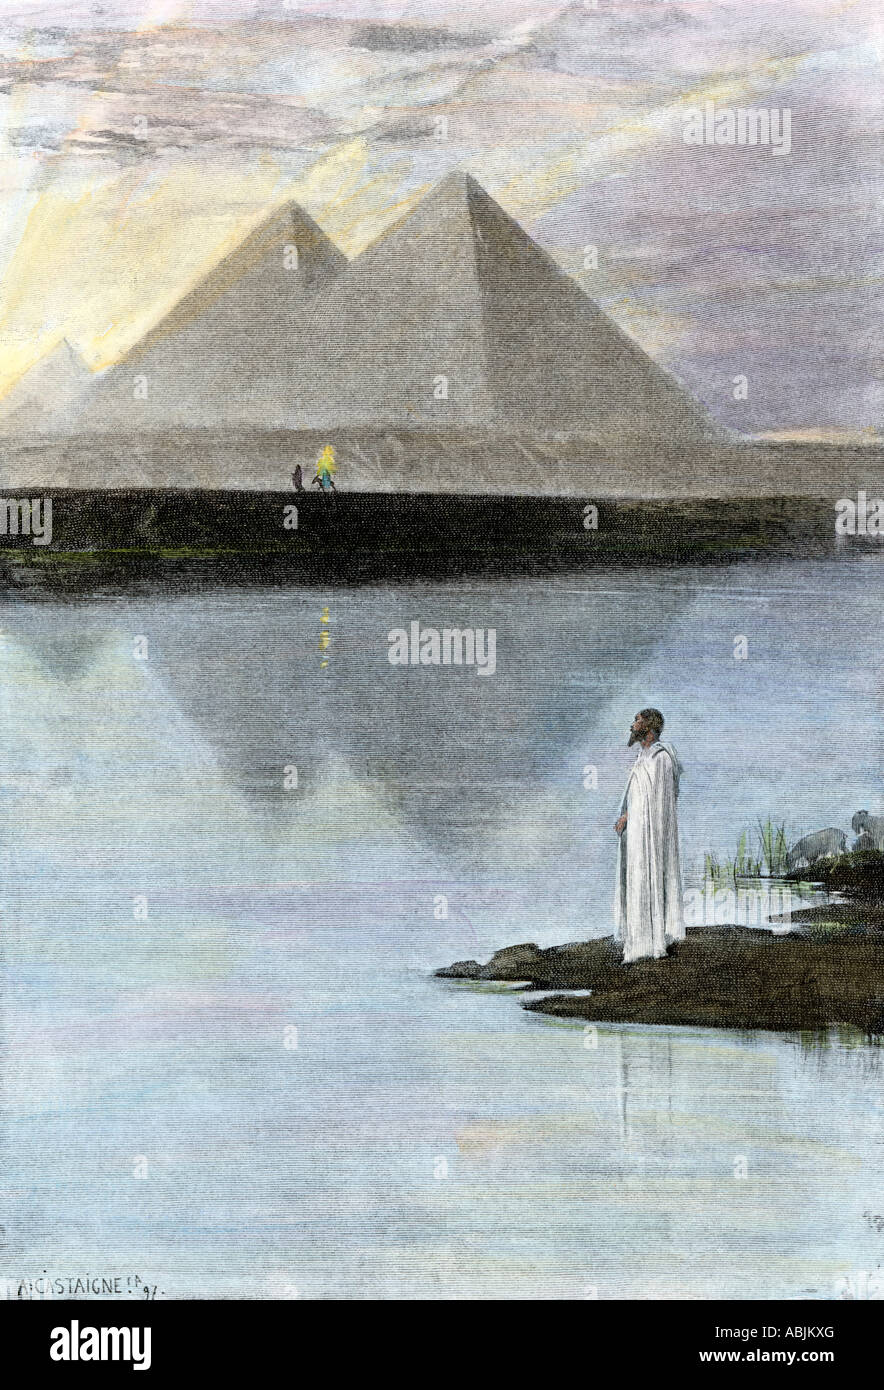 Les grandes pyramides sur les rives du Nil. La main, d'une illustration de demi-teinte Banque D'Images